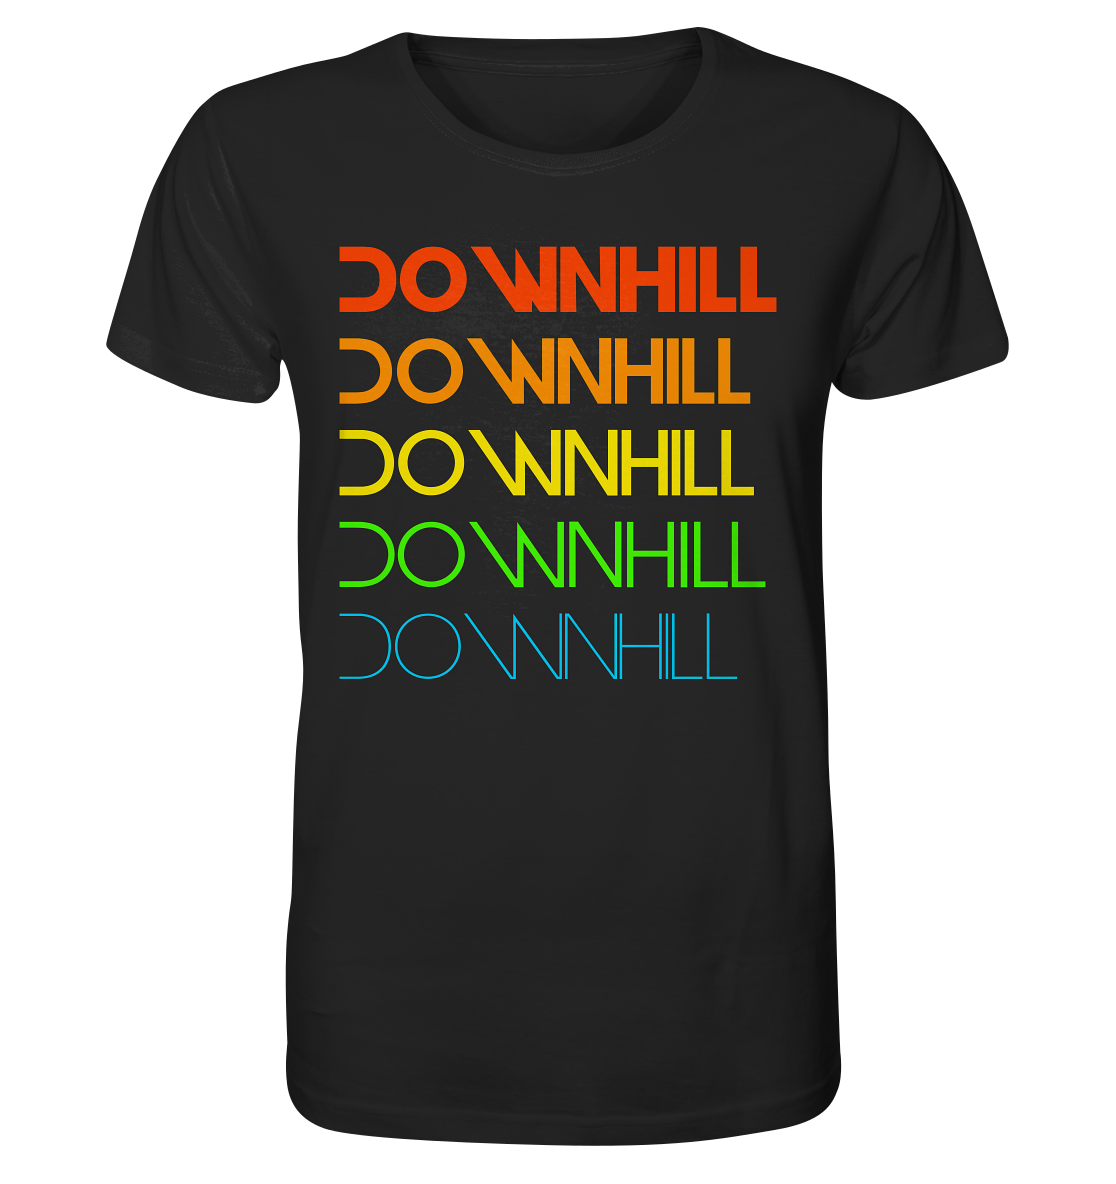 Downhill rainbow - Organic Shirt